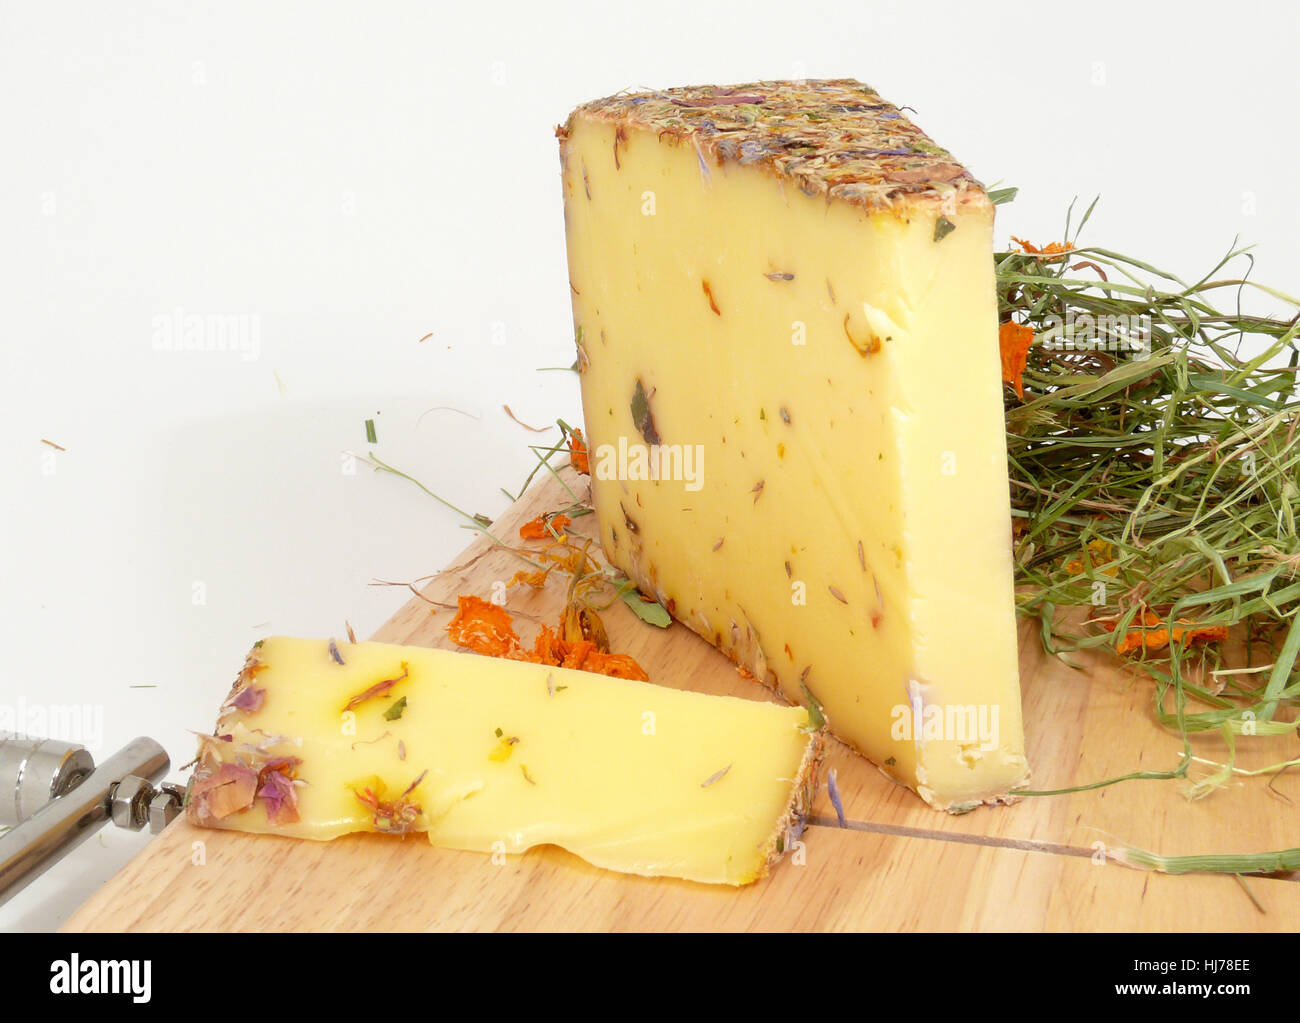 allgu wildflowers cheese Stock Photo